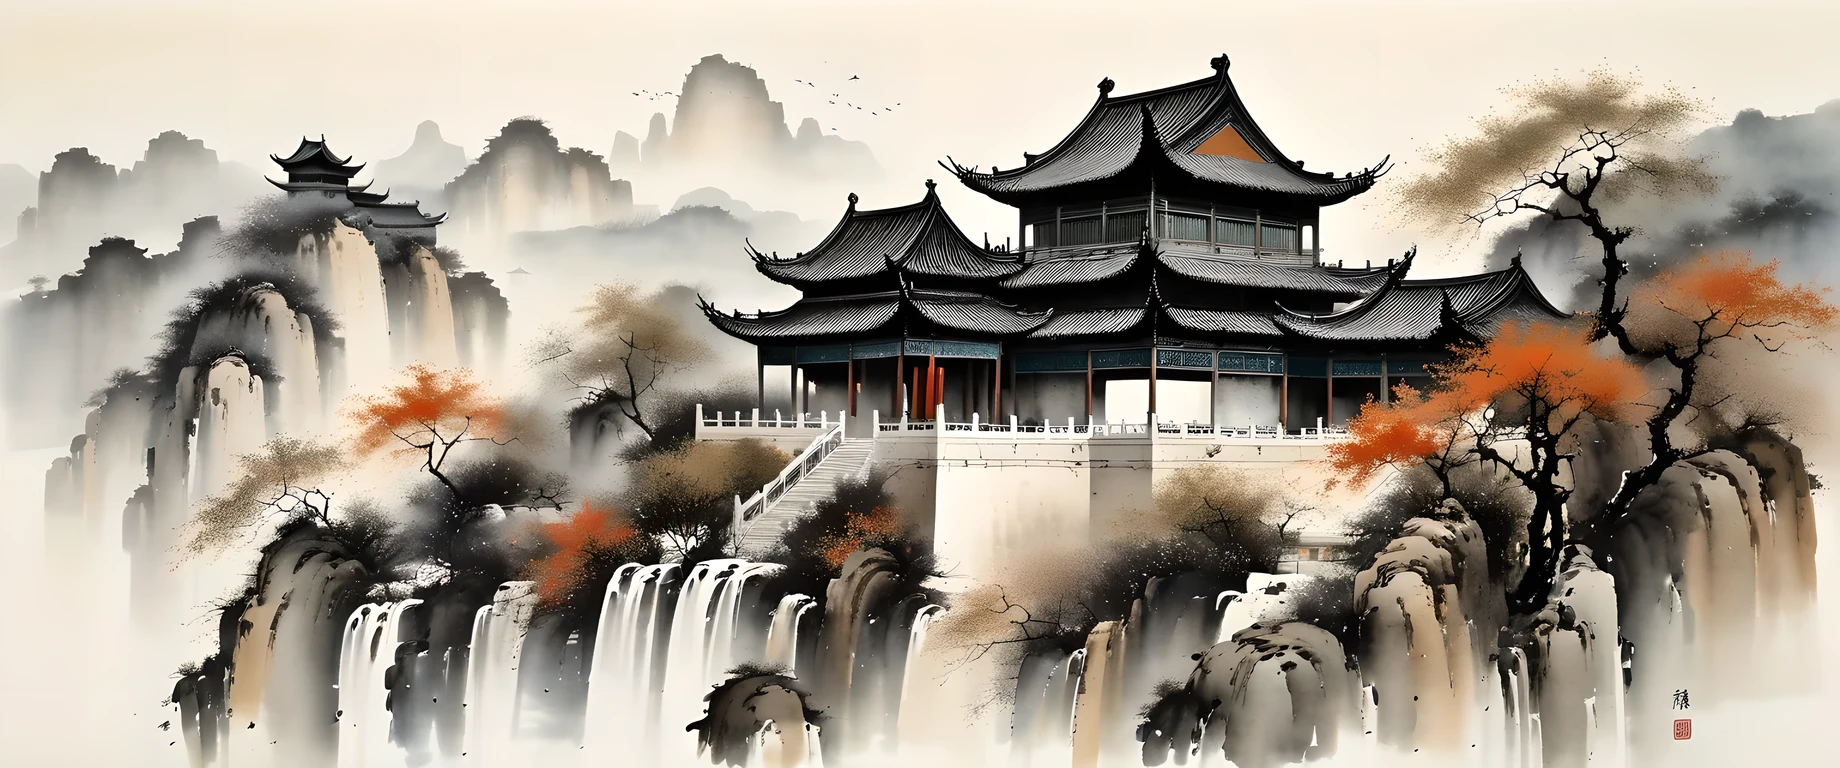 arte de tinta requintada, realista, arquitetura chinesa detalhada, Estilo Wu Guanzhong, Cores desbotadas

